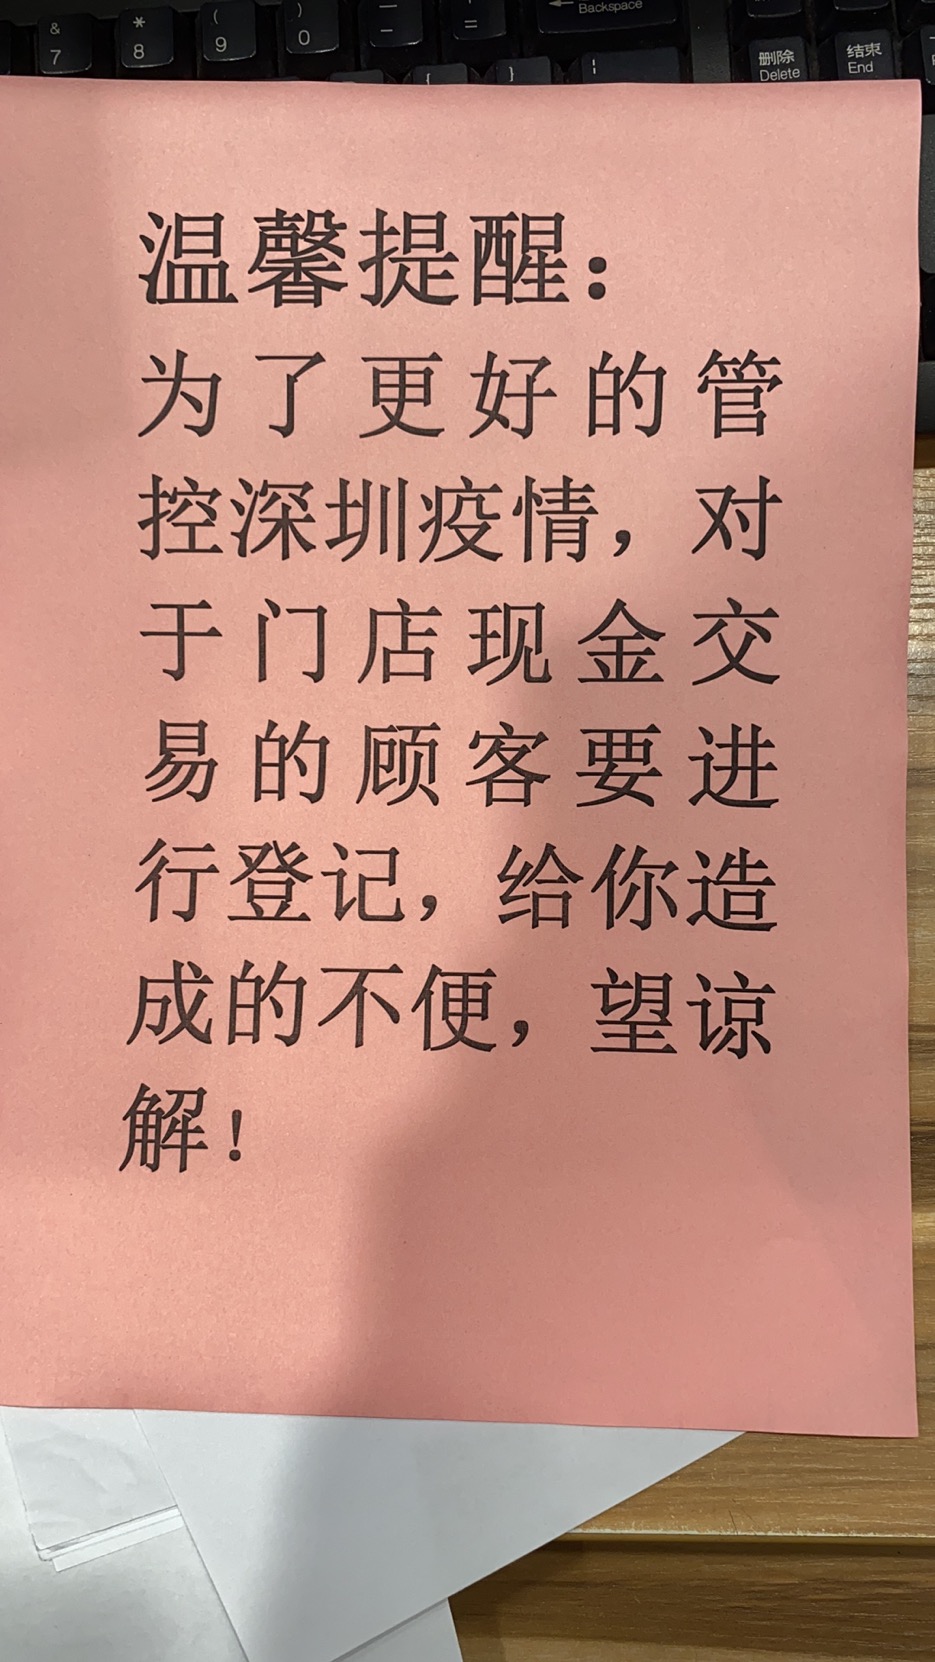 深圳福田区某超市的“使用现金需登记”的温馨提醒。  超市员工提供